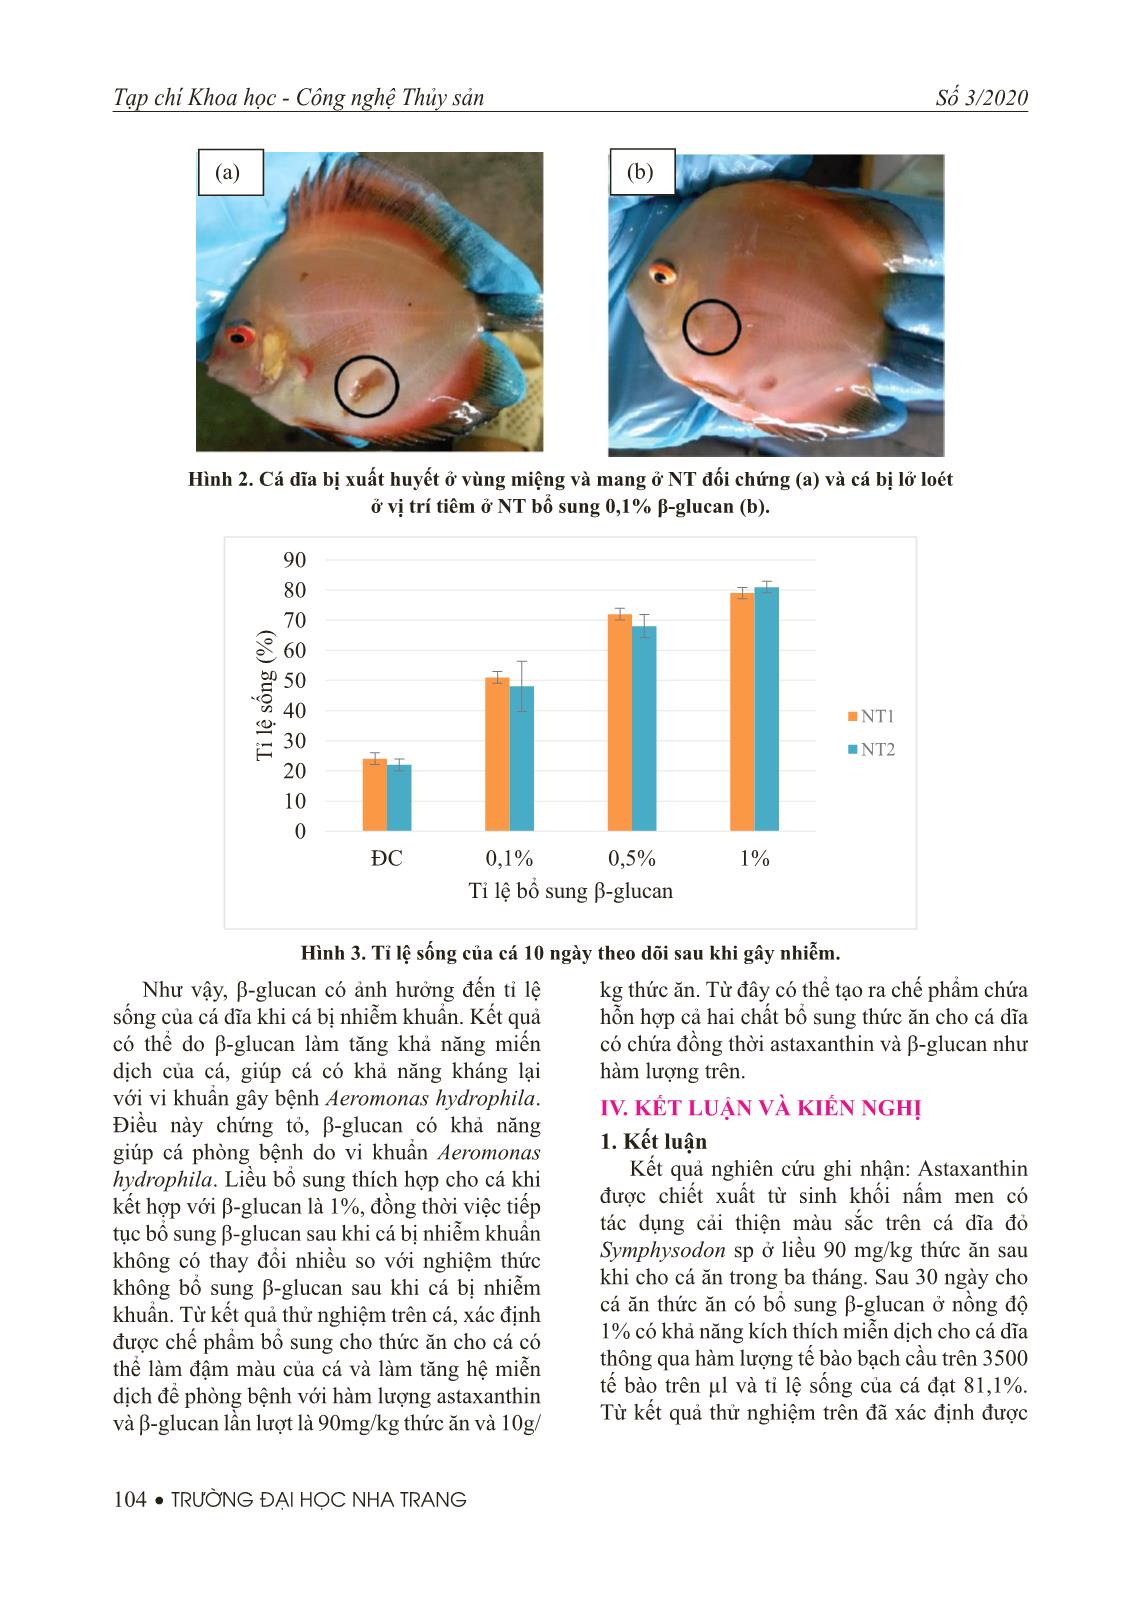 Nghiên cứu ảnh hưởng của việc bổ sung Astaxanthin và β-glucan được chiết xuất từ sinh khối nấm men Rhodospridium sp. vào thức ăn cho cá dĩa đỏ Symphysodon sp trang 7